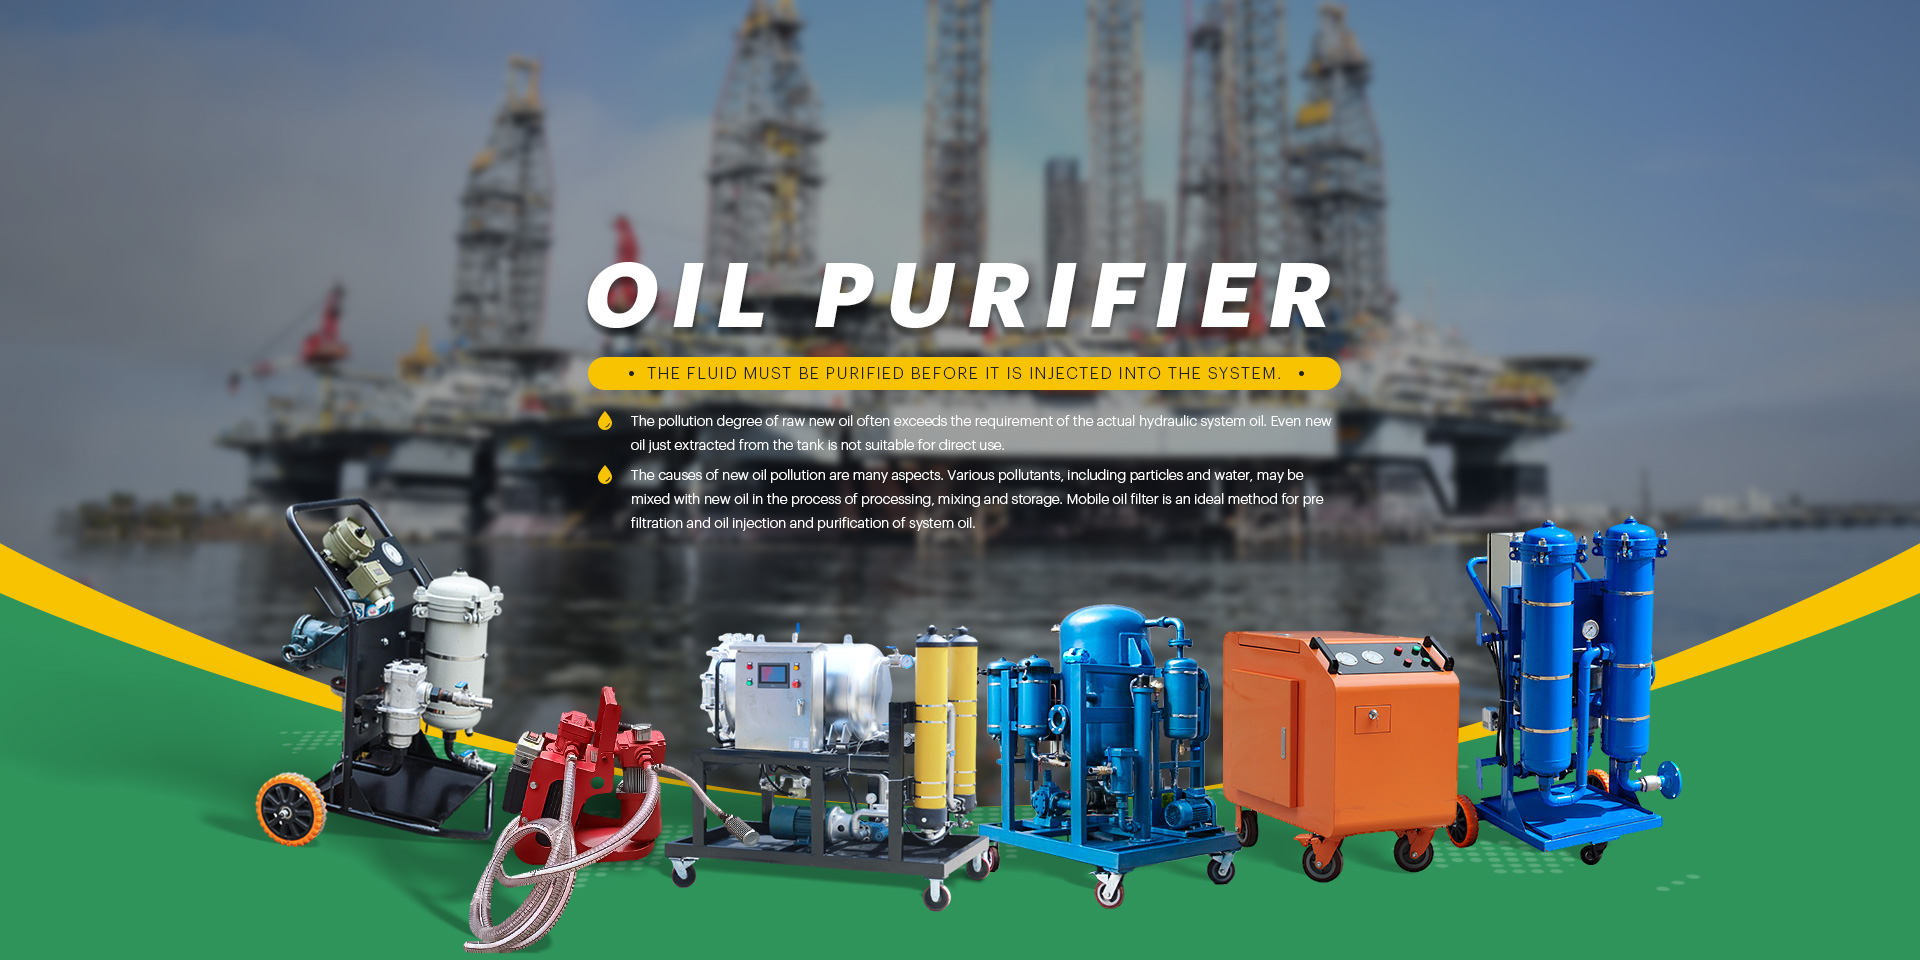 Oil purifier